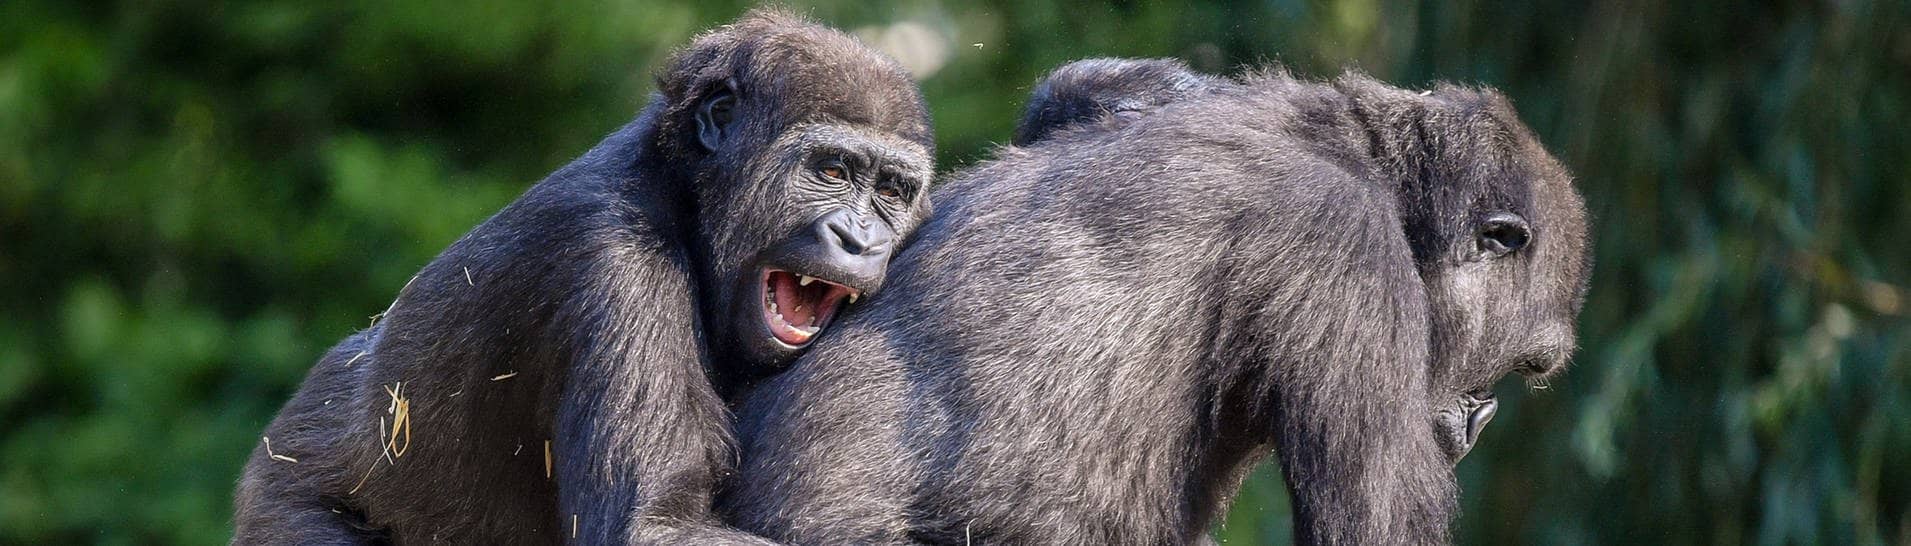 Zwei junge Gorillas spielen miteinander